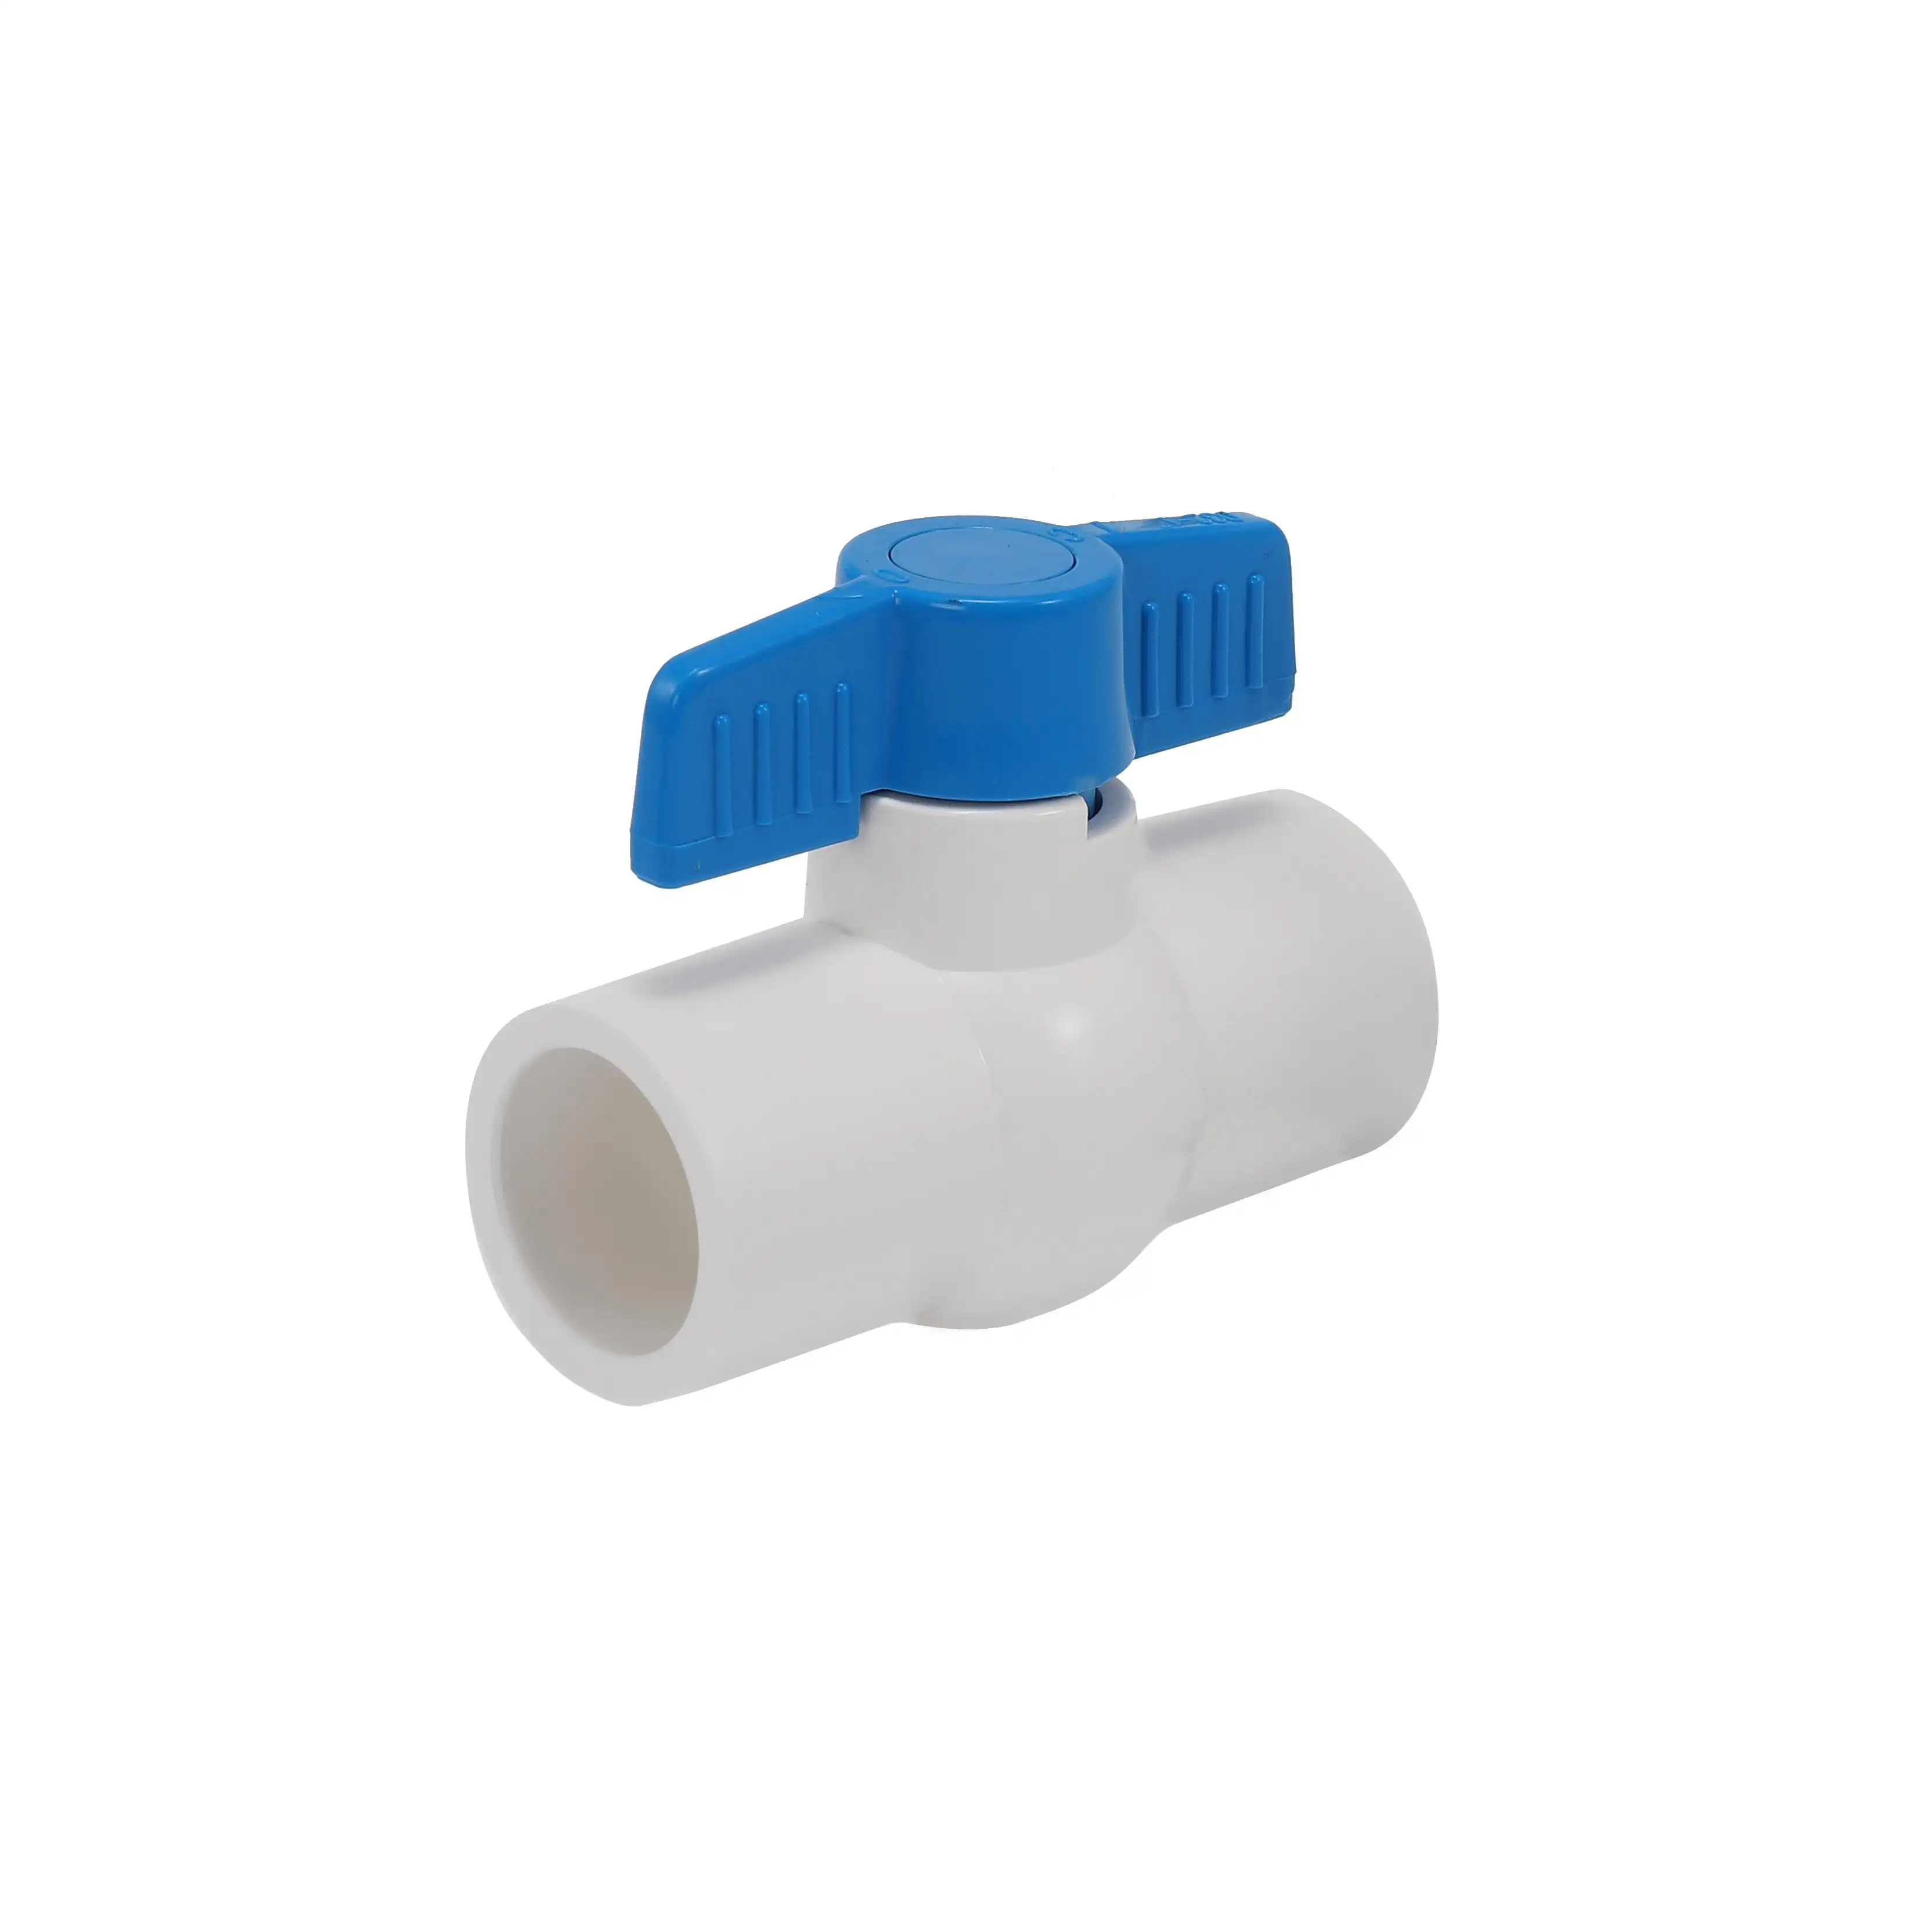 Van bi cho hệ thống ống nước van bi cho hệ thống nước PVC uPVC nhựa PVC bóng nhỏ gọn van